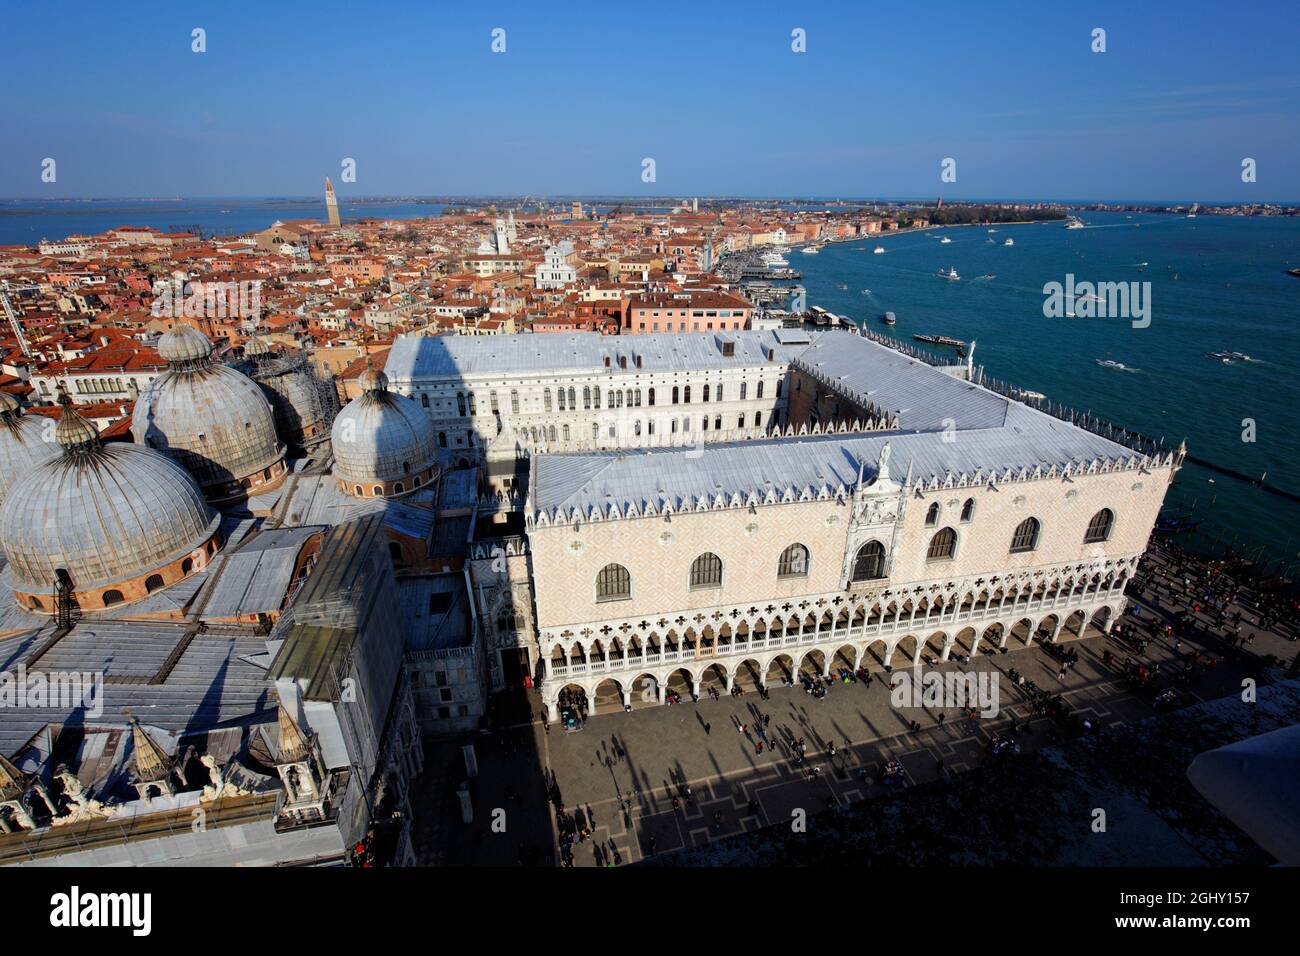 Vista elevada del palacio ducal y de la ciudad, Venecia, Italia Foto de stock